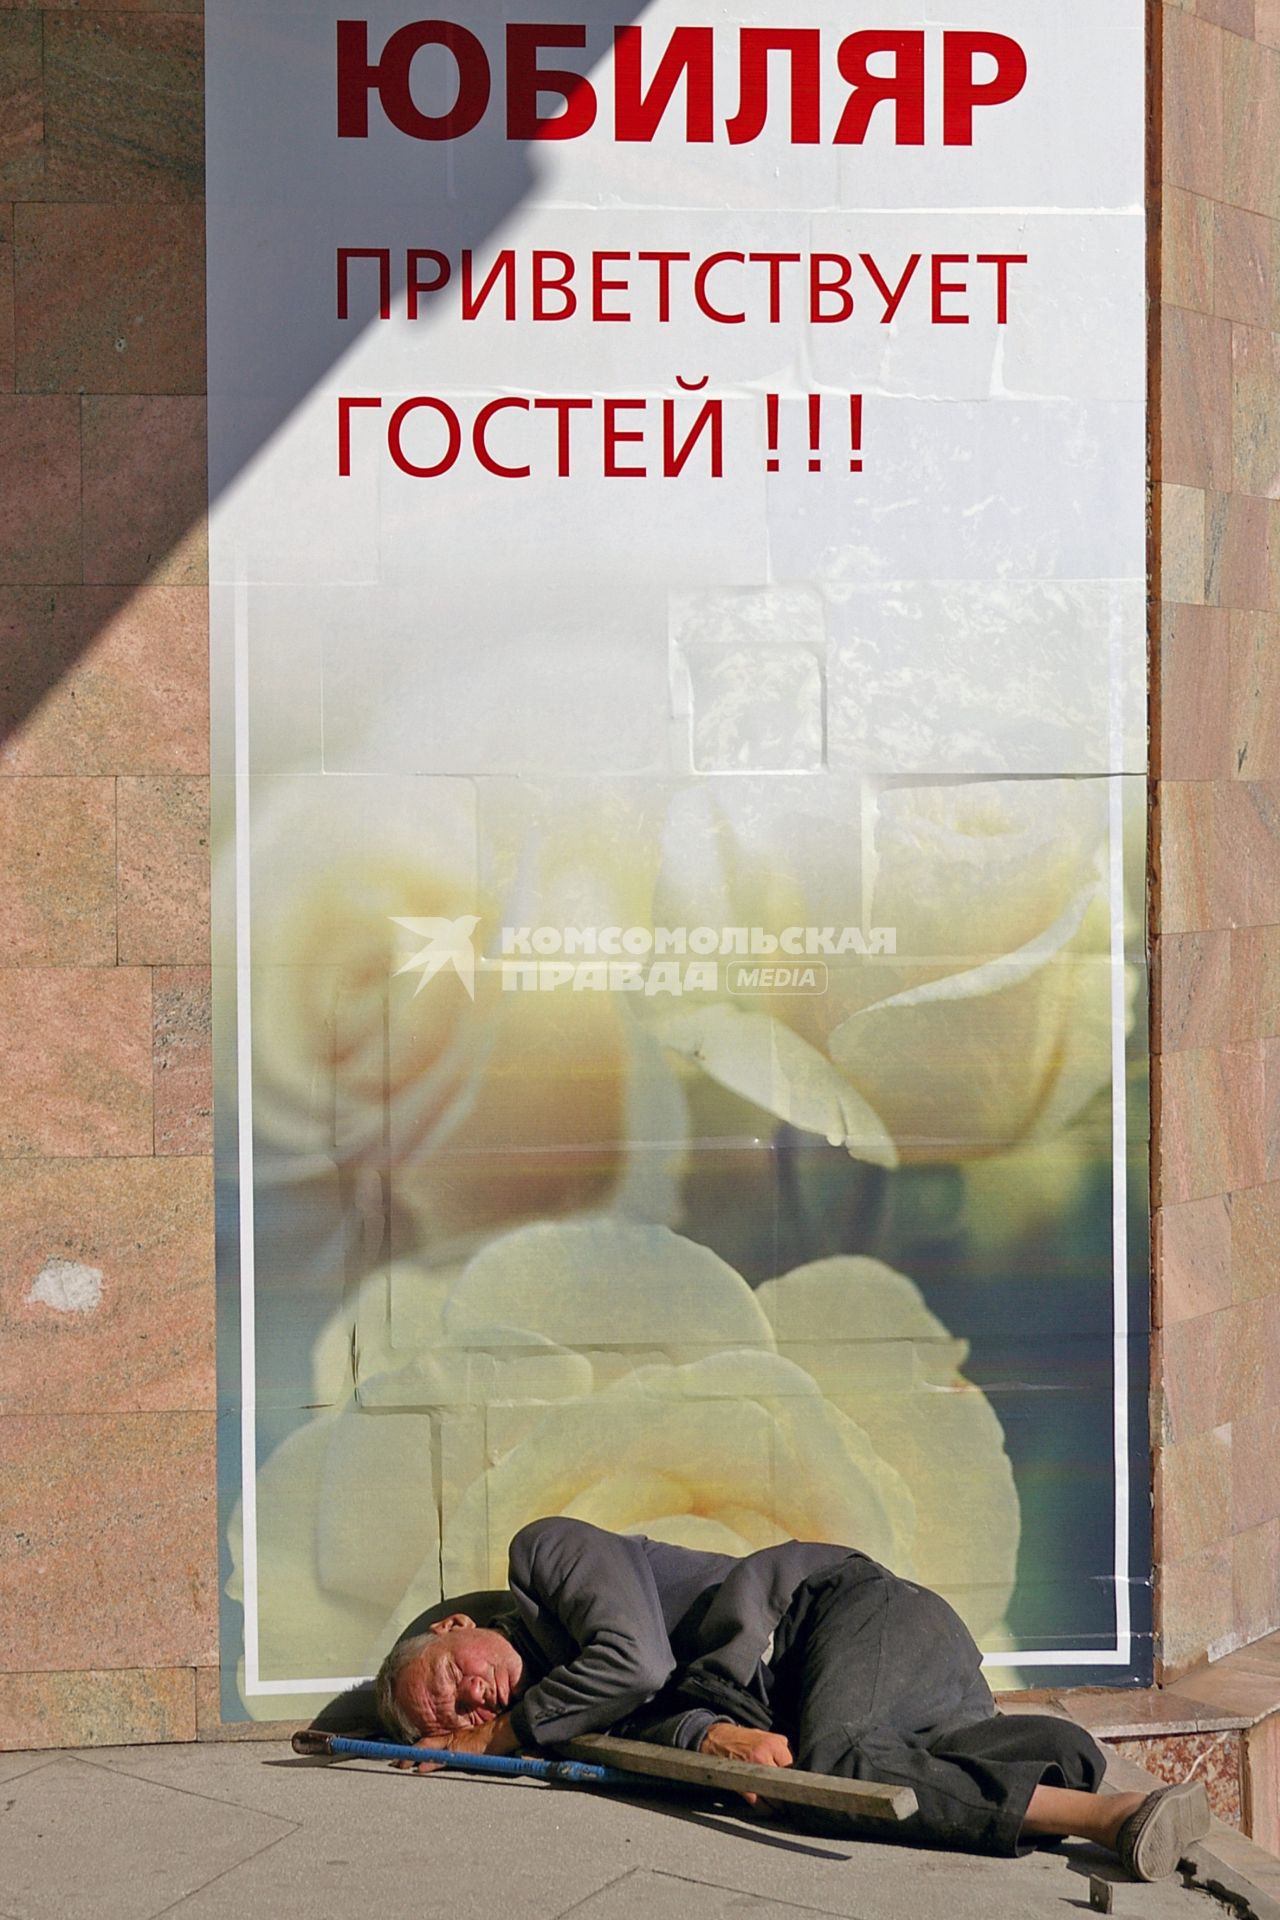 Бомж уснул на улице у плаката: `Юбиляр приветствует гостей!`